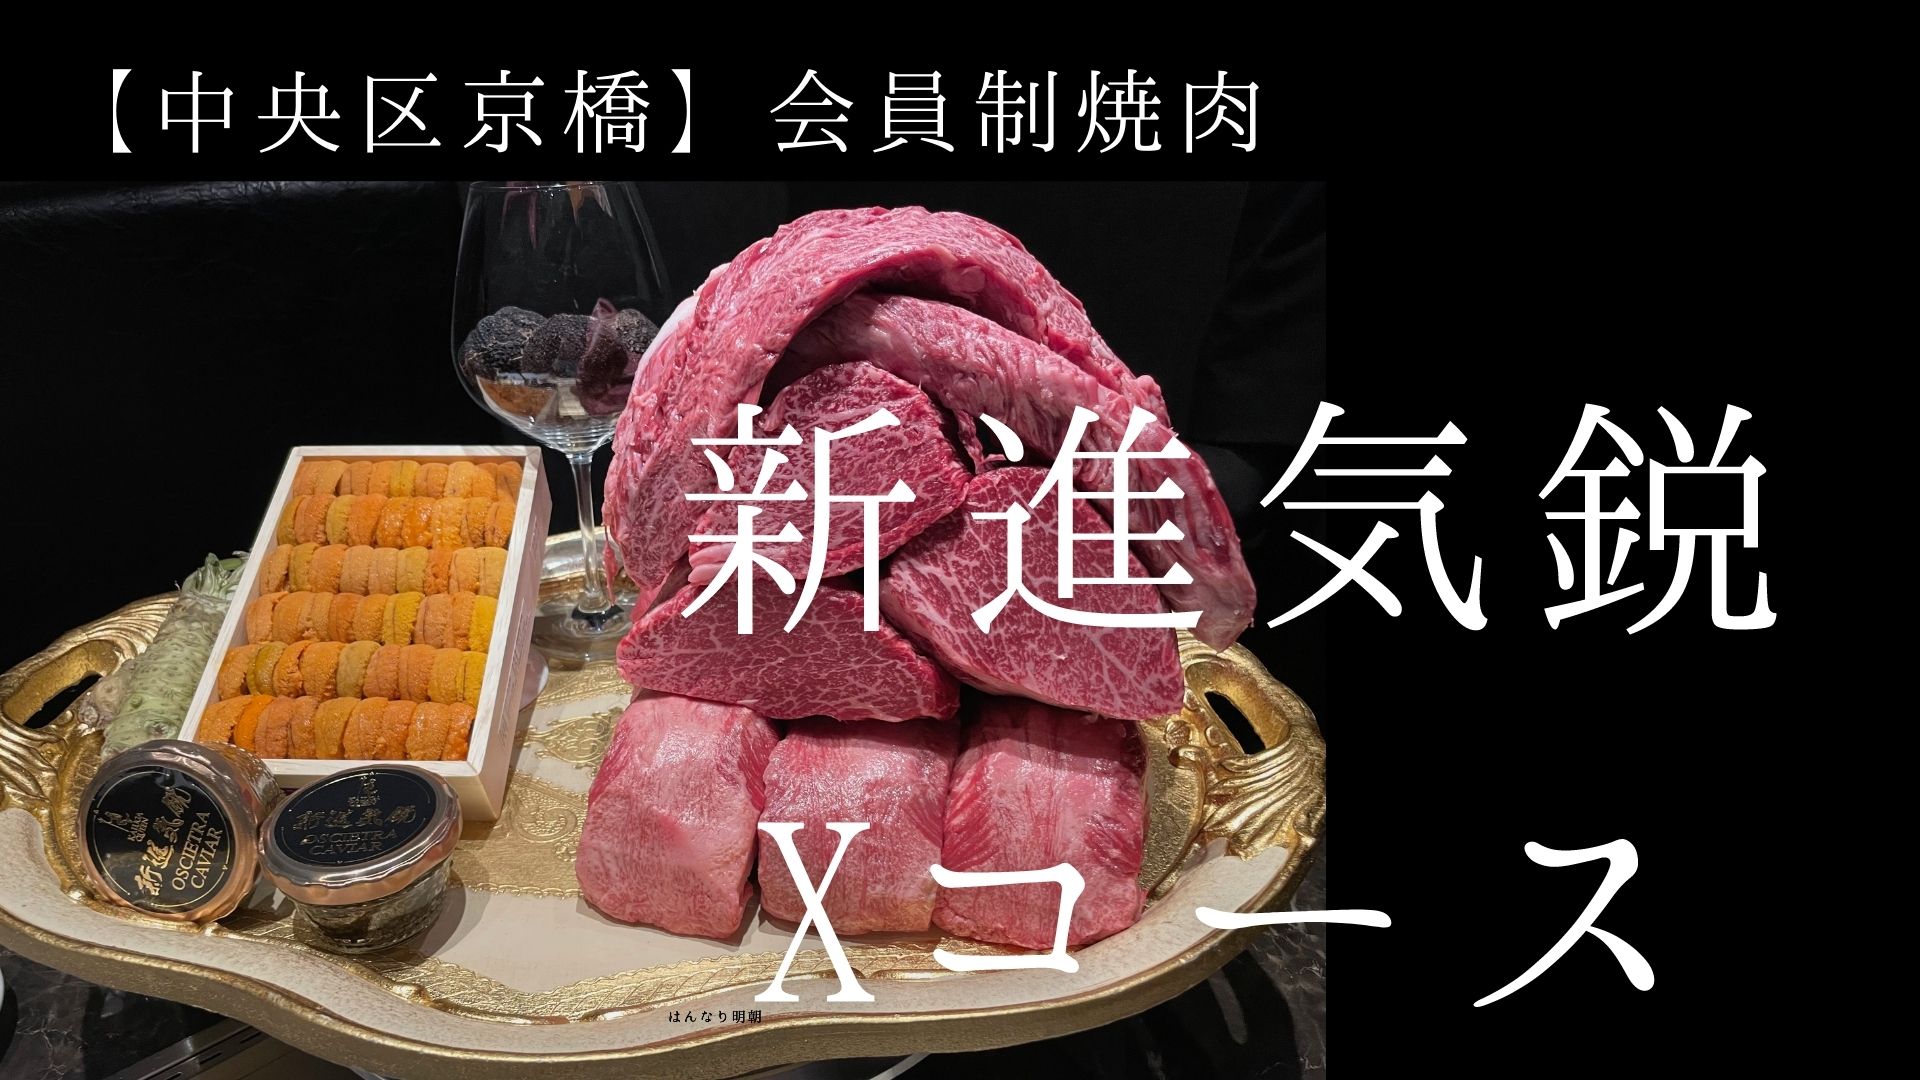 【中央区京橋】会員制焼肉の新進気鋭のXコース